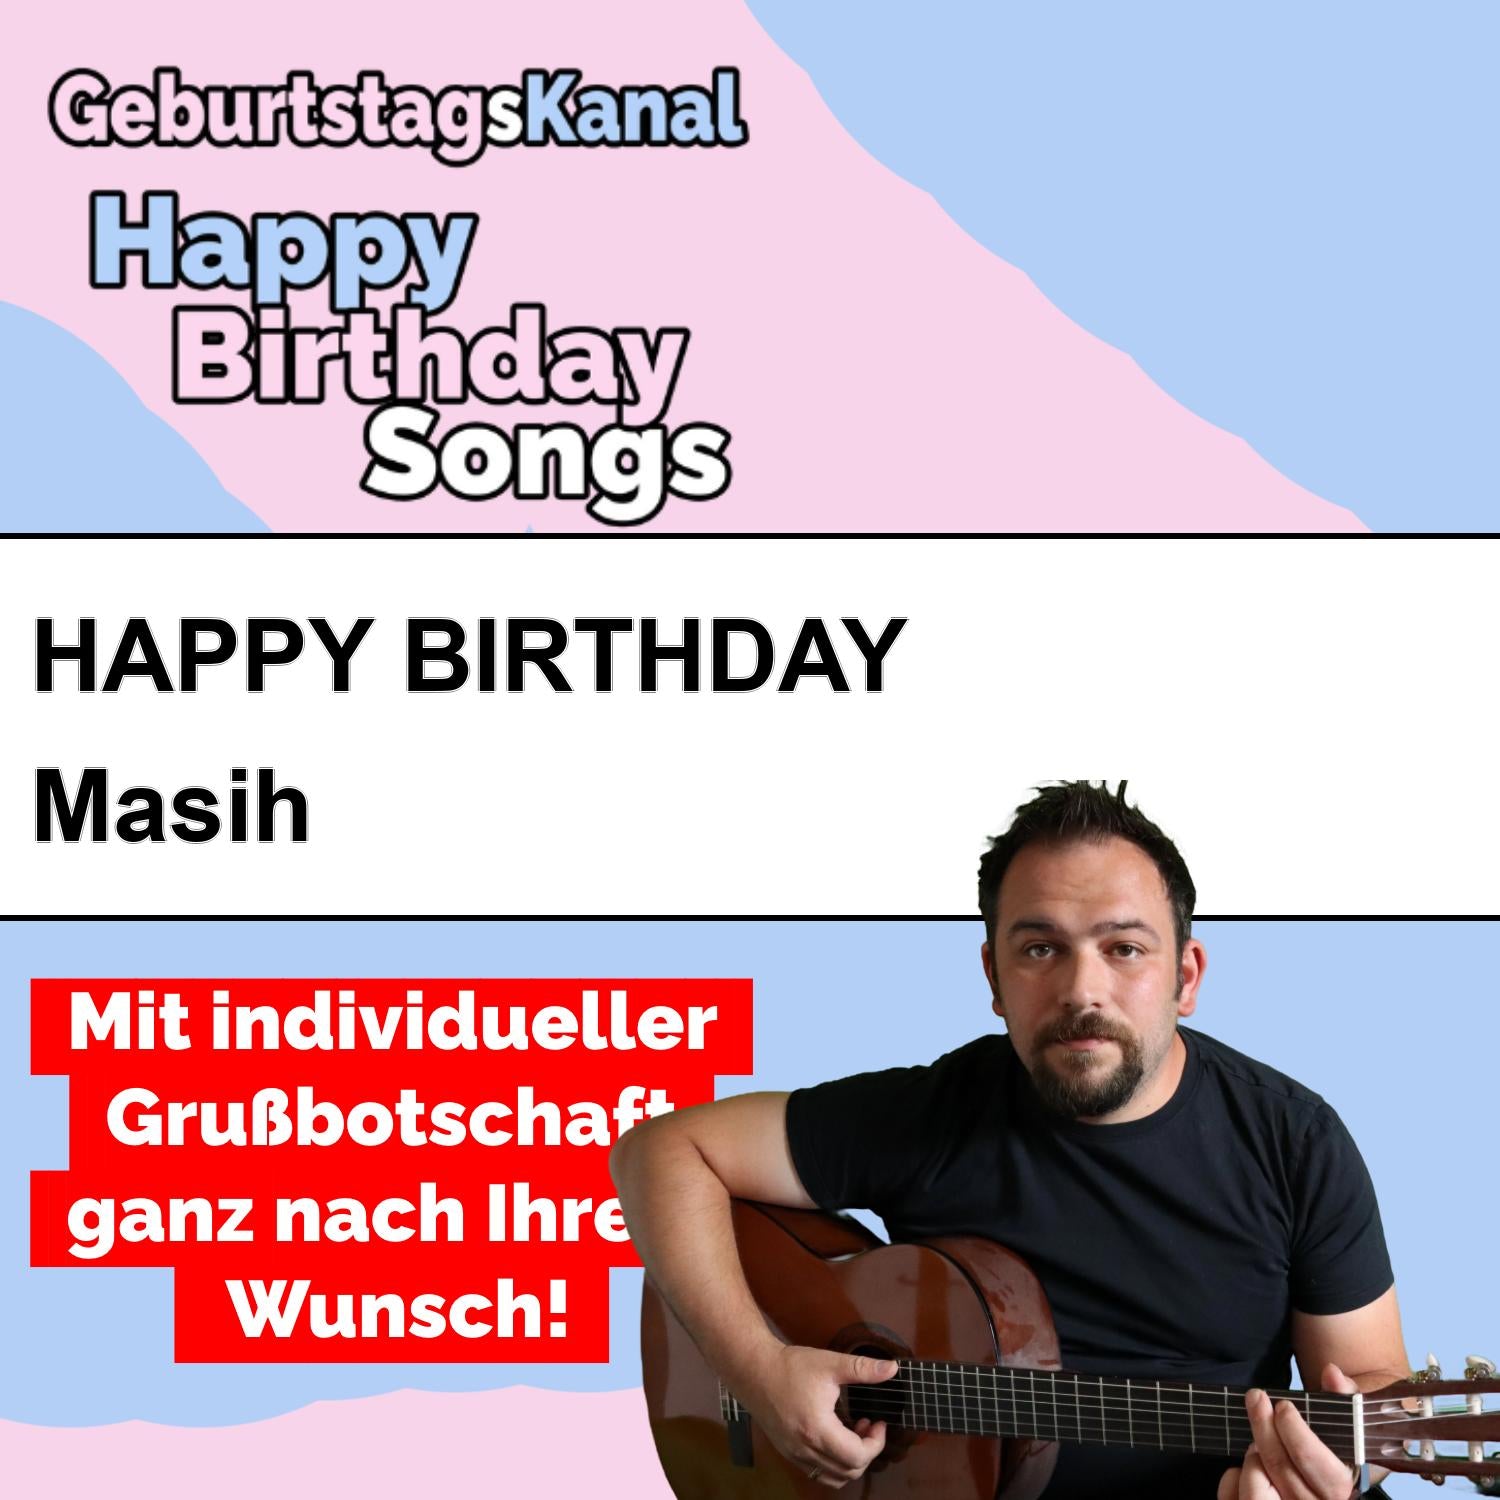 Produktbild Happy Birthday to you Masih mit Wunschgrußbotschaft